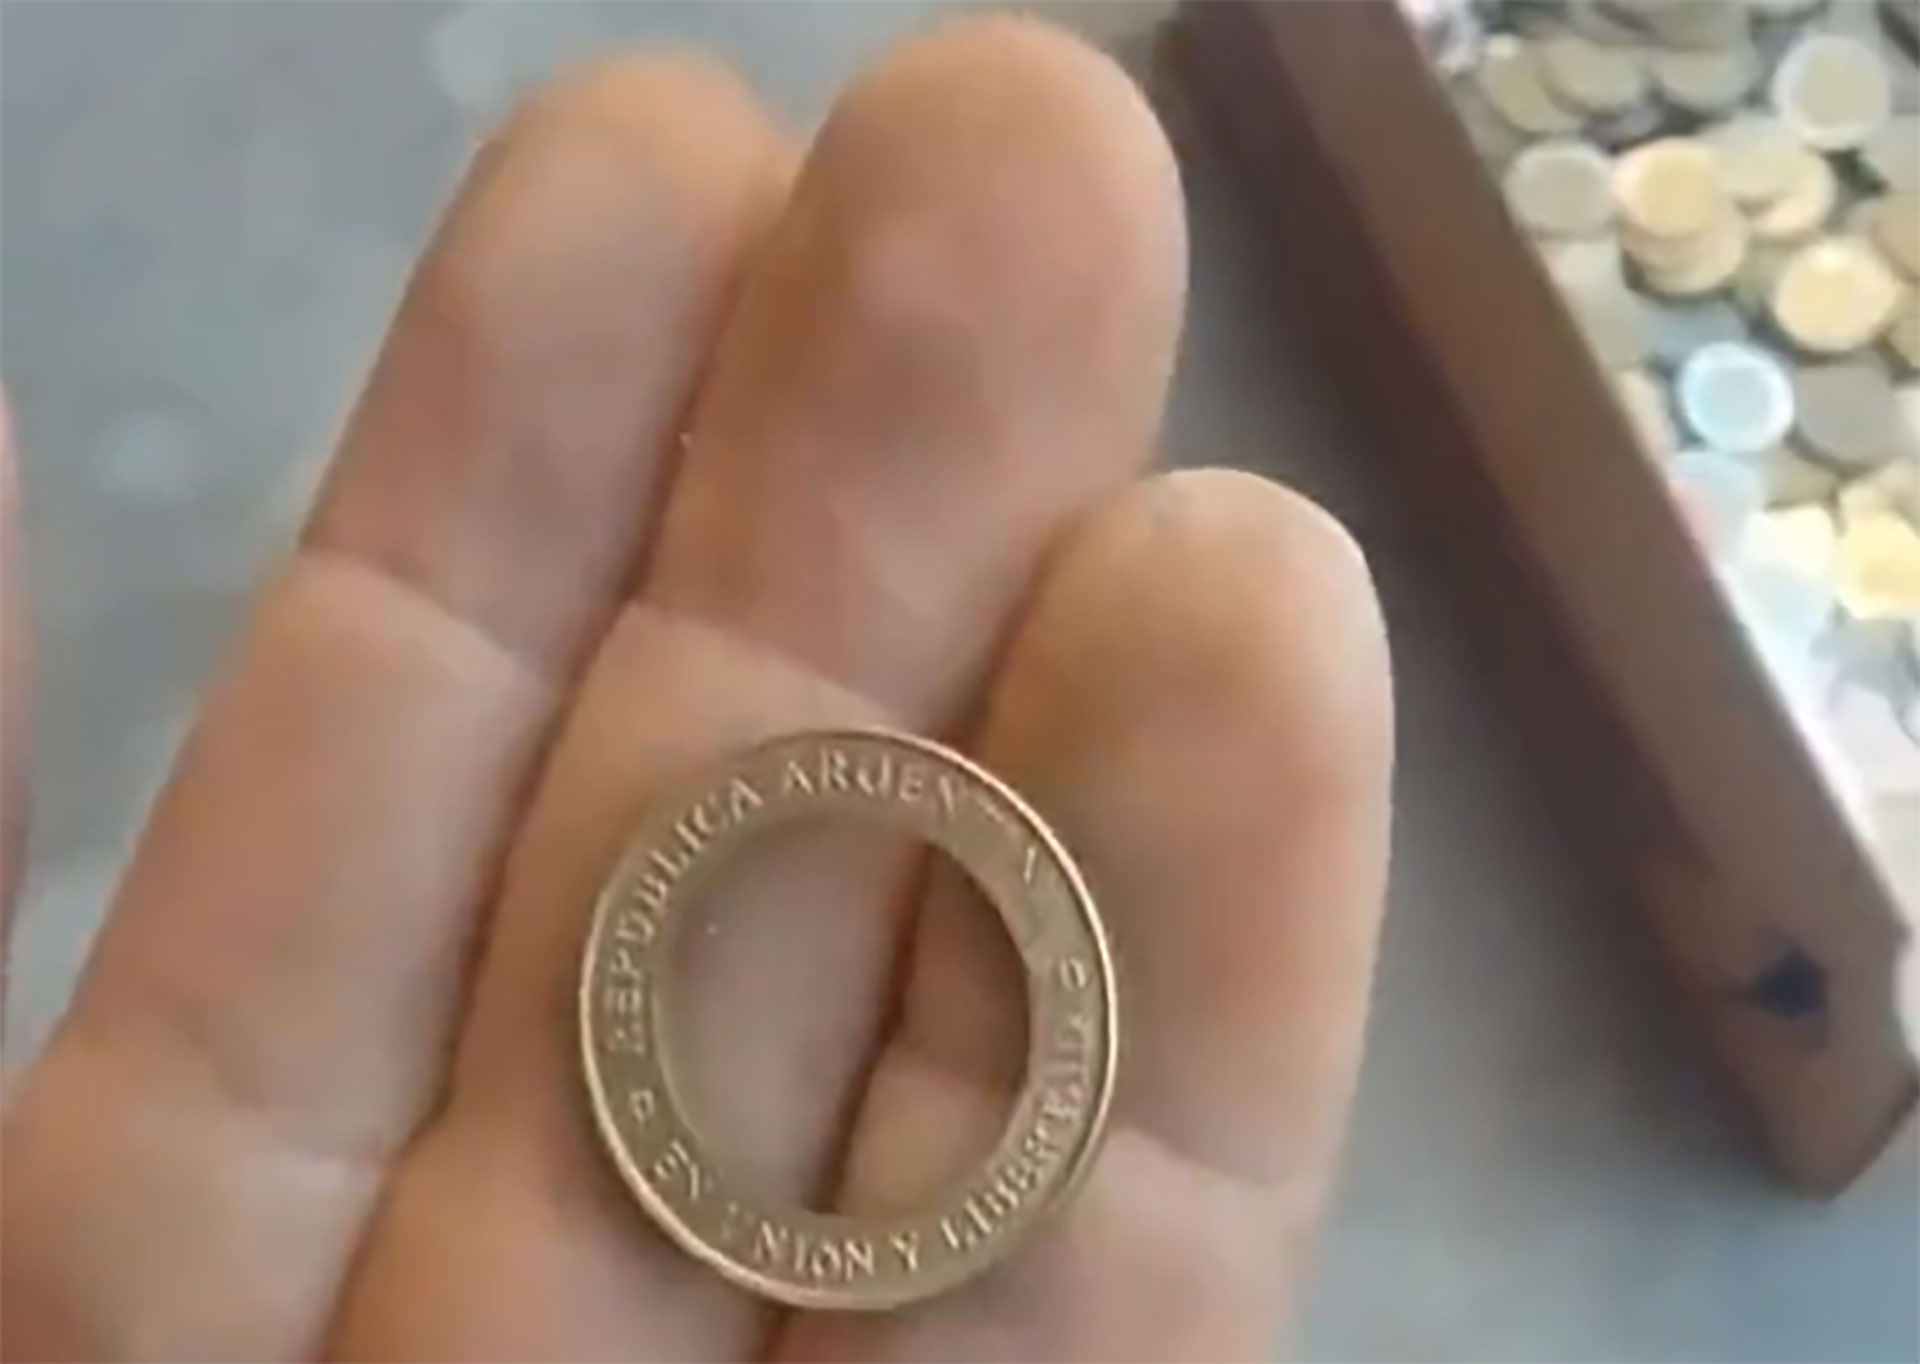 Según el video viralizado, el anillo dorado de la moneda de 2 pesos puede venderse por 12 pesos